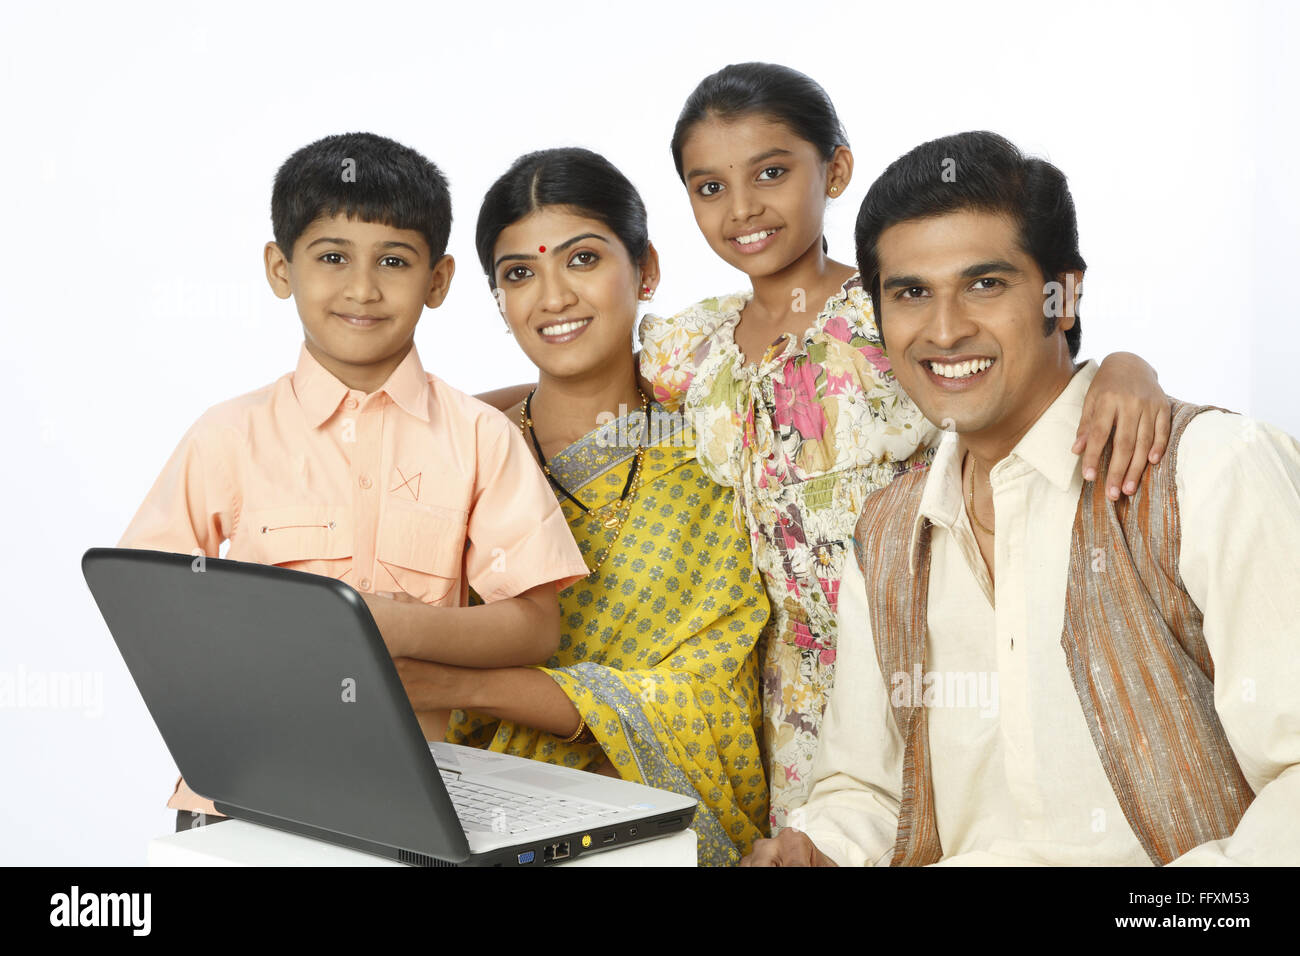 Famille rurale riche avec un ordinateur portable sur le tableau M.# 743A, 743B, 743C, 743D Banque D'Images